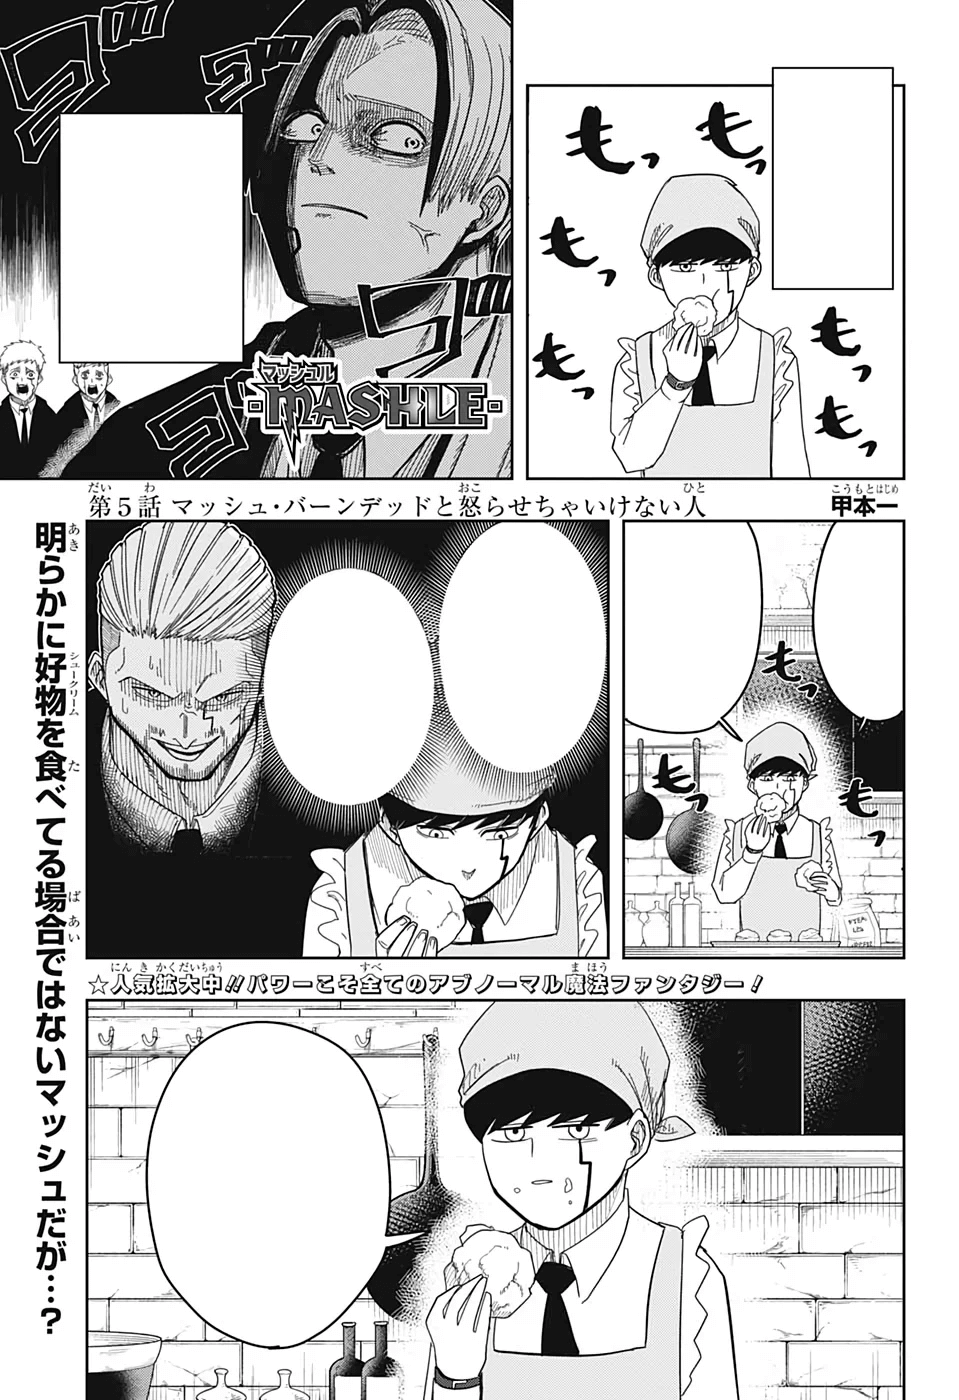 Mashle Capítulo 86 - Manga Online